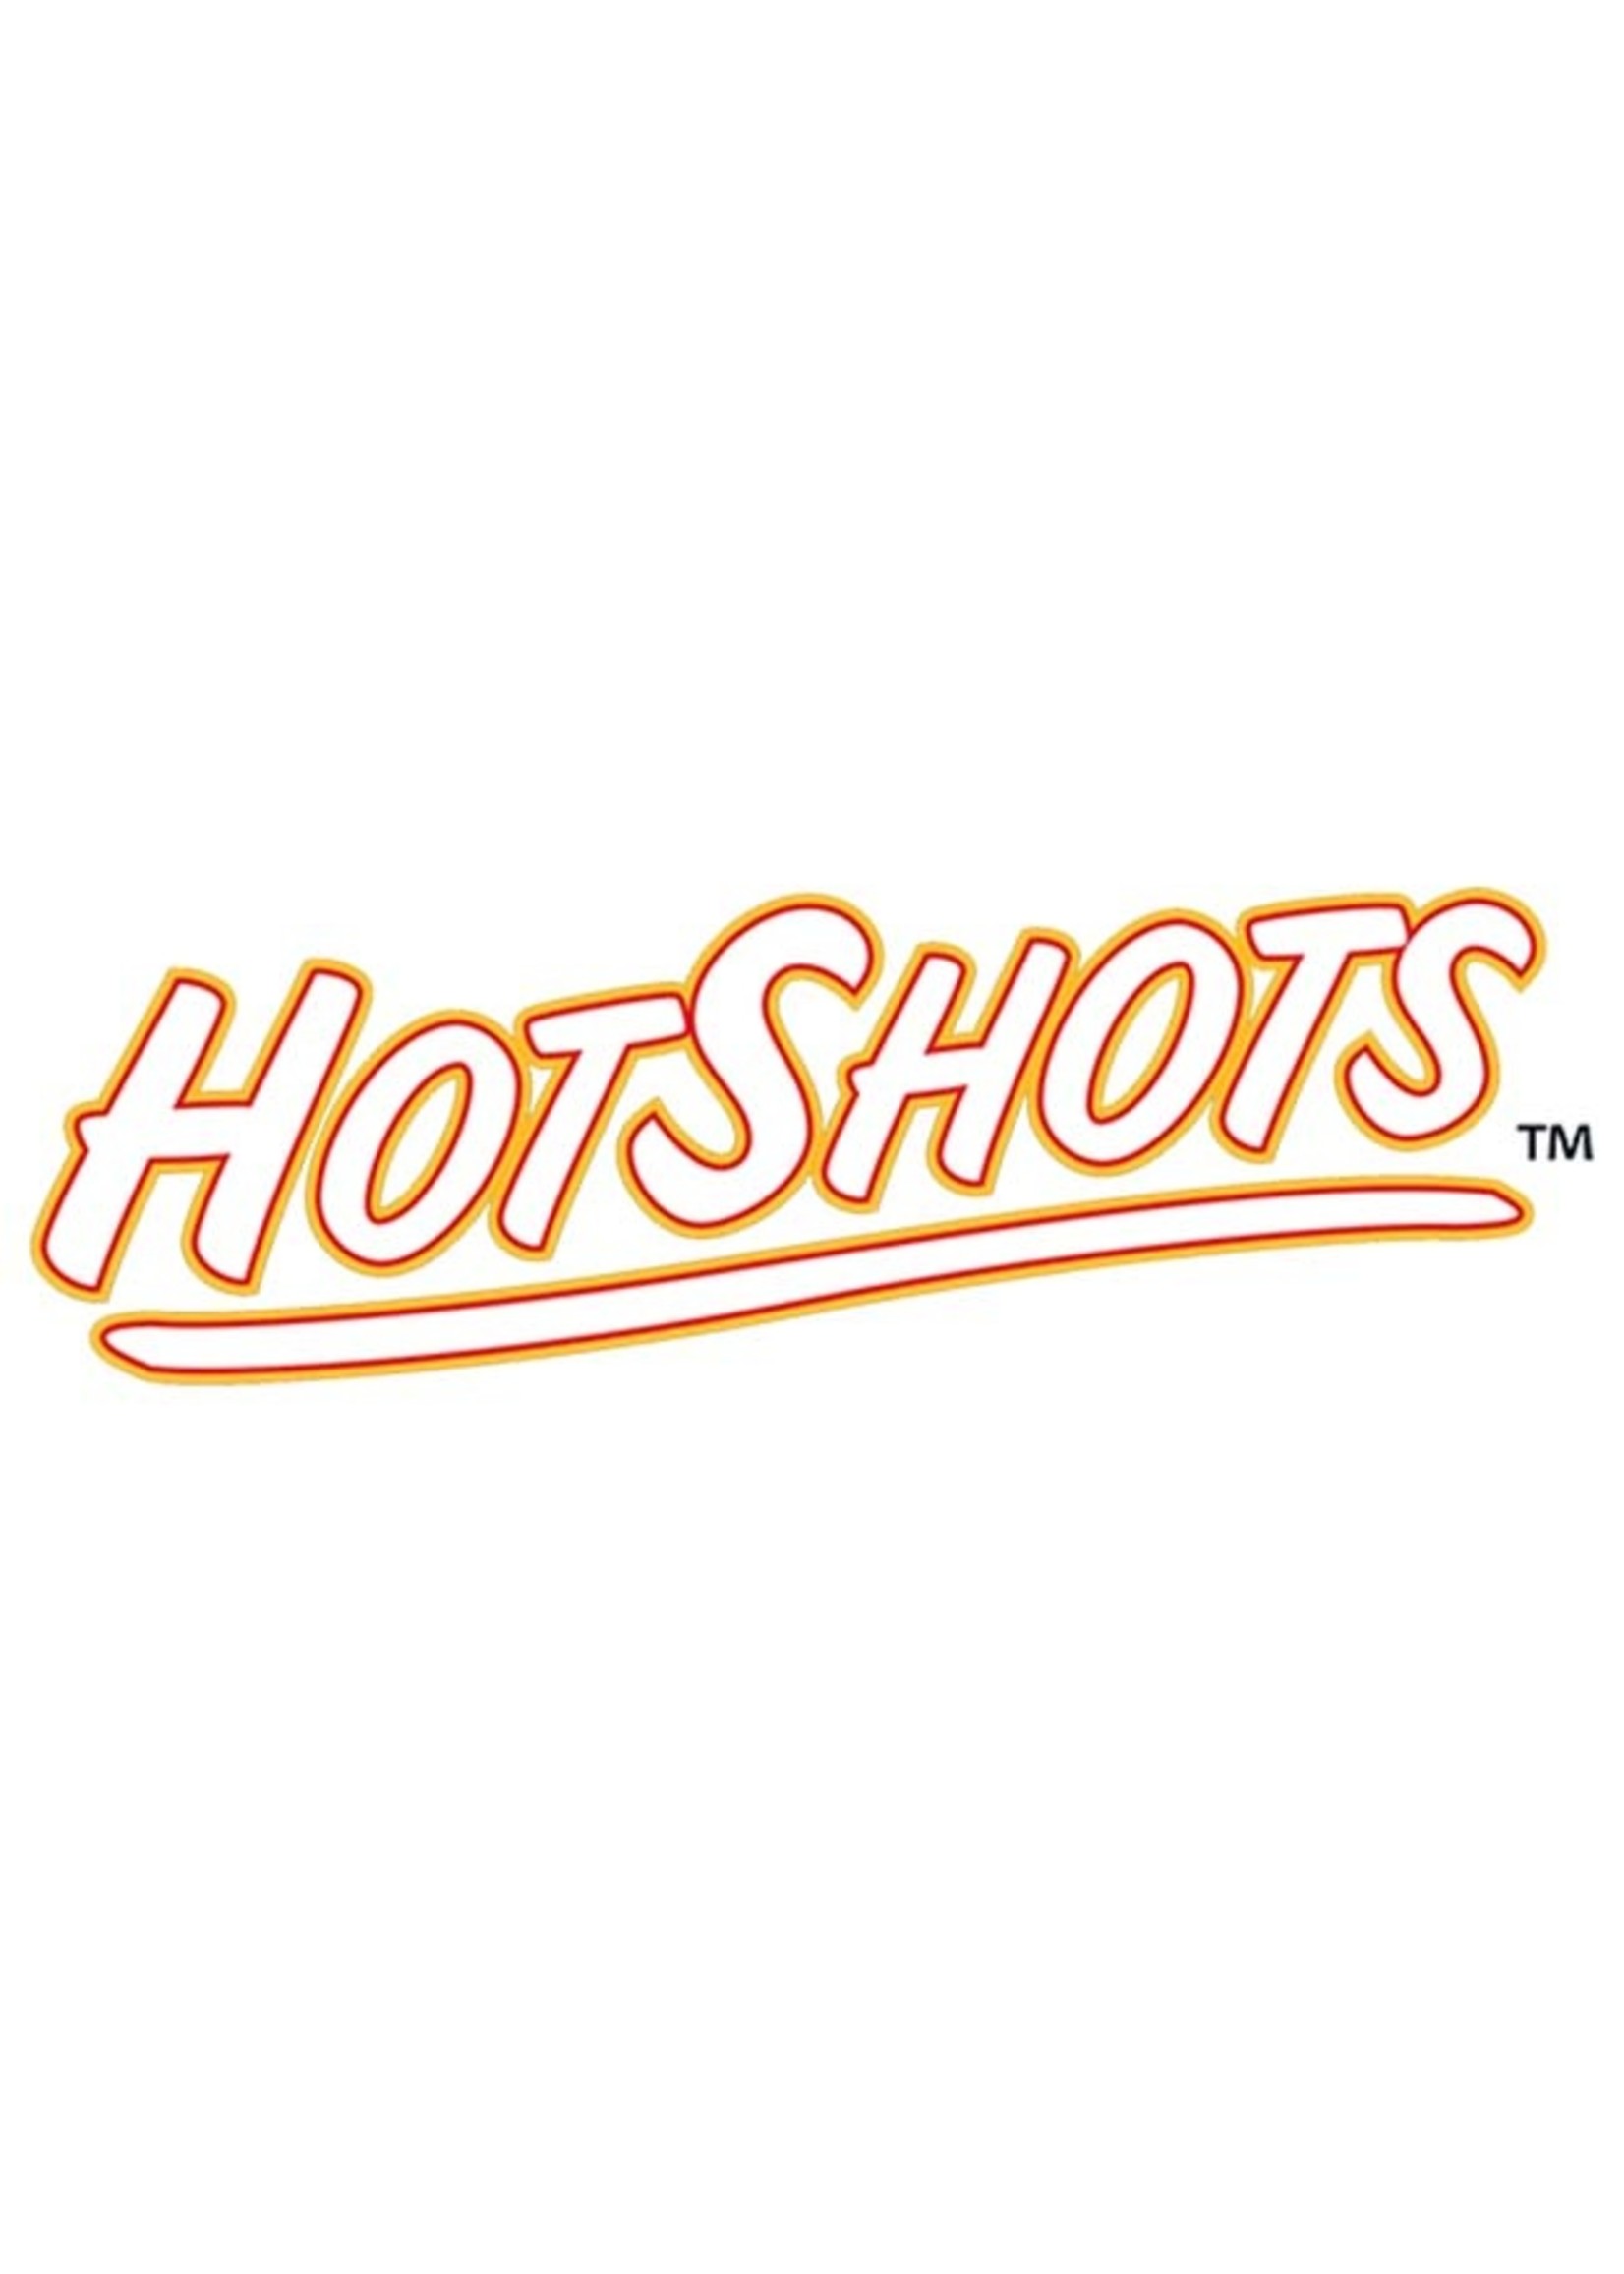 Hotshots HotShots